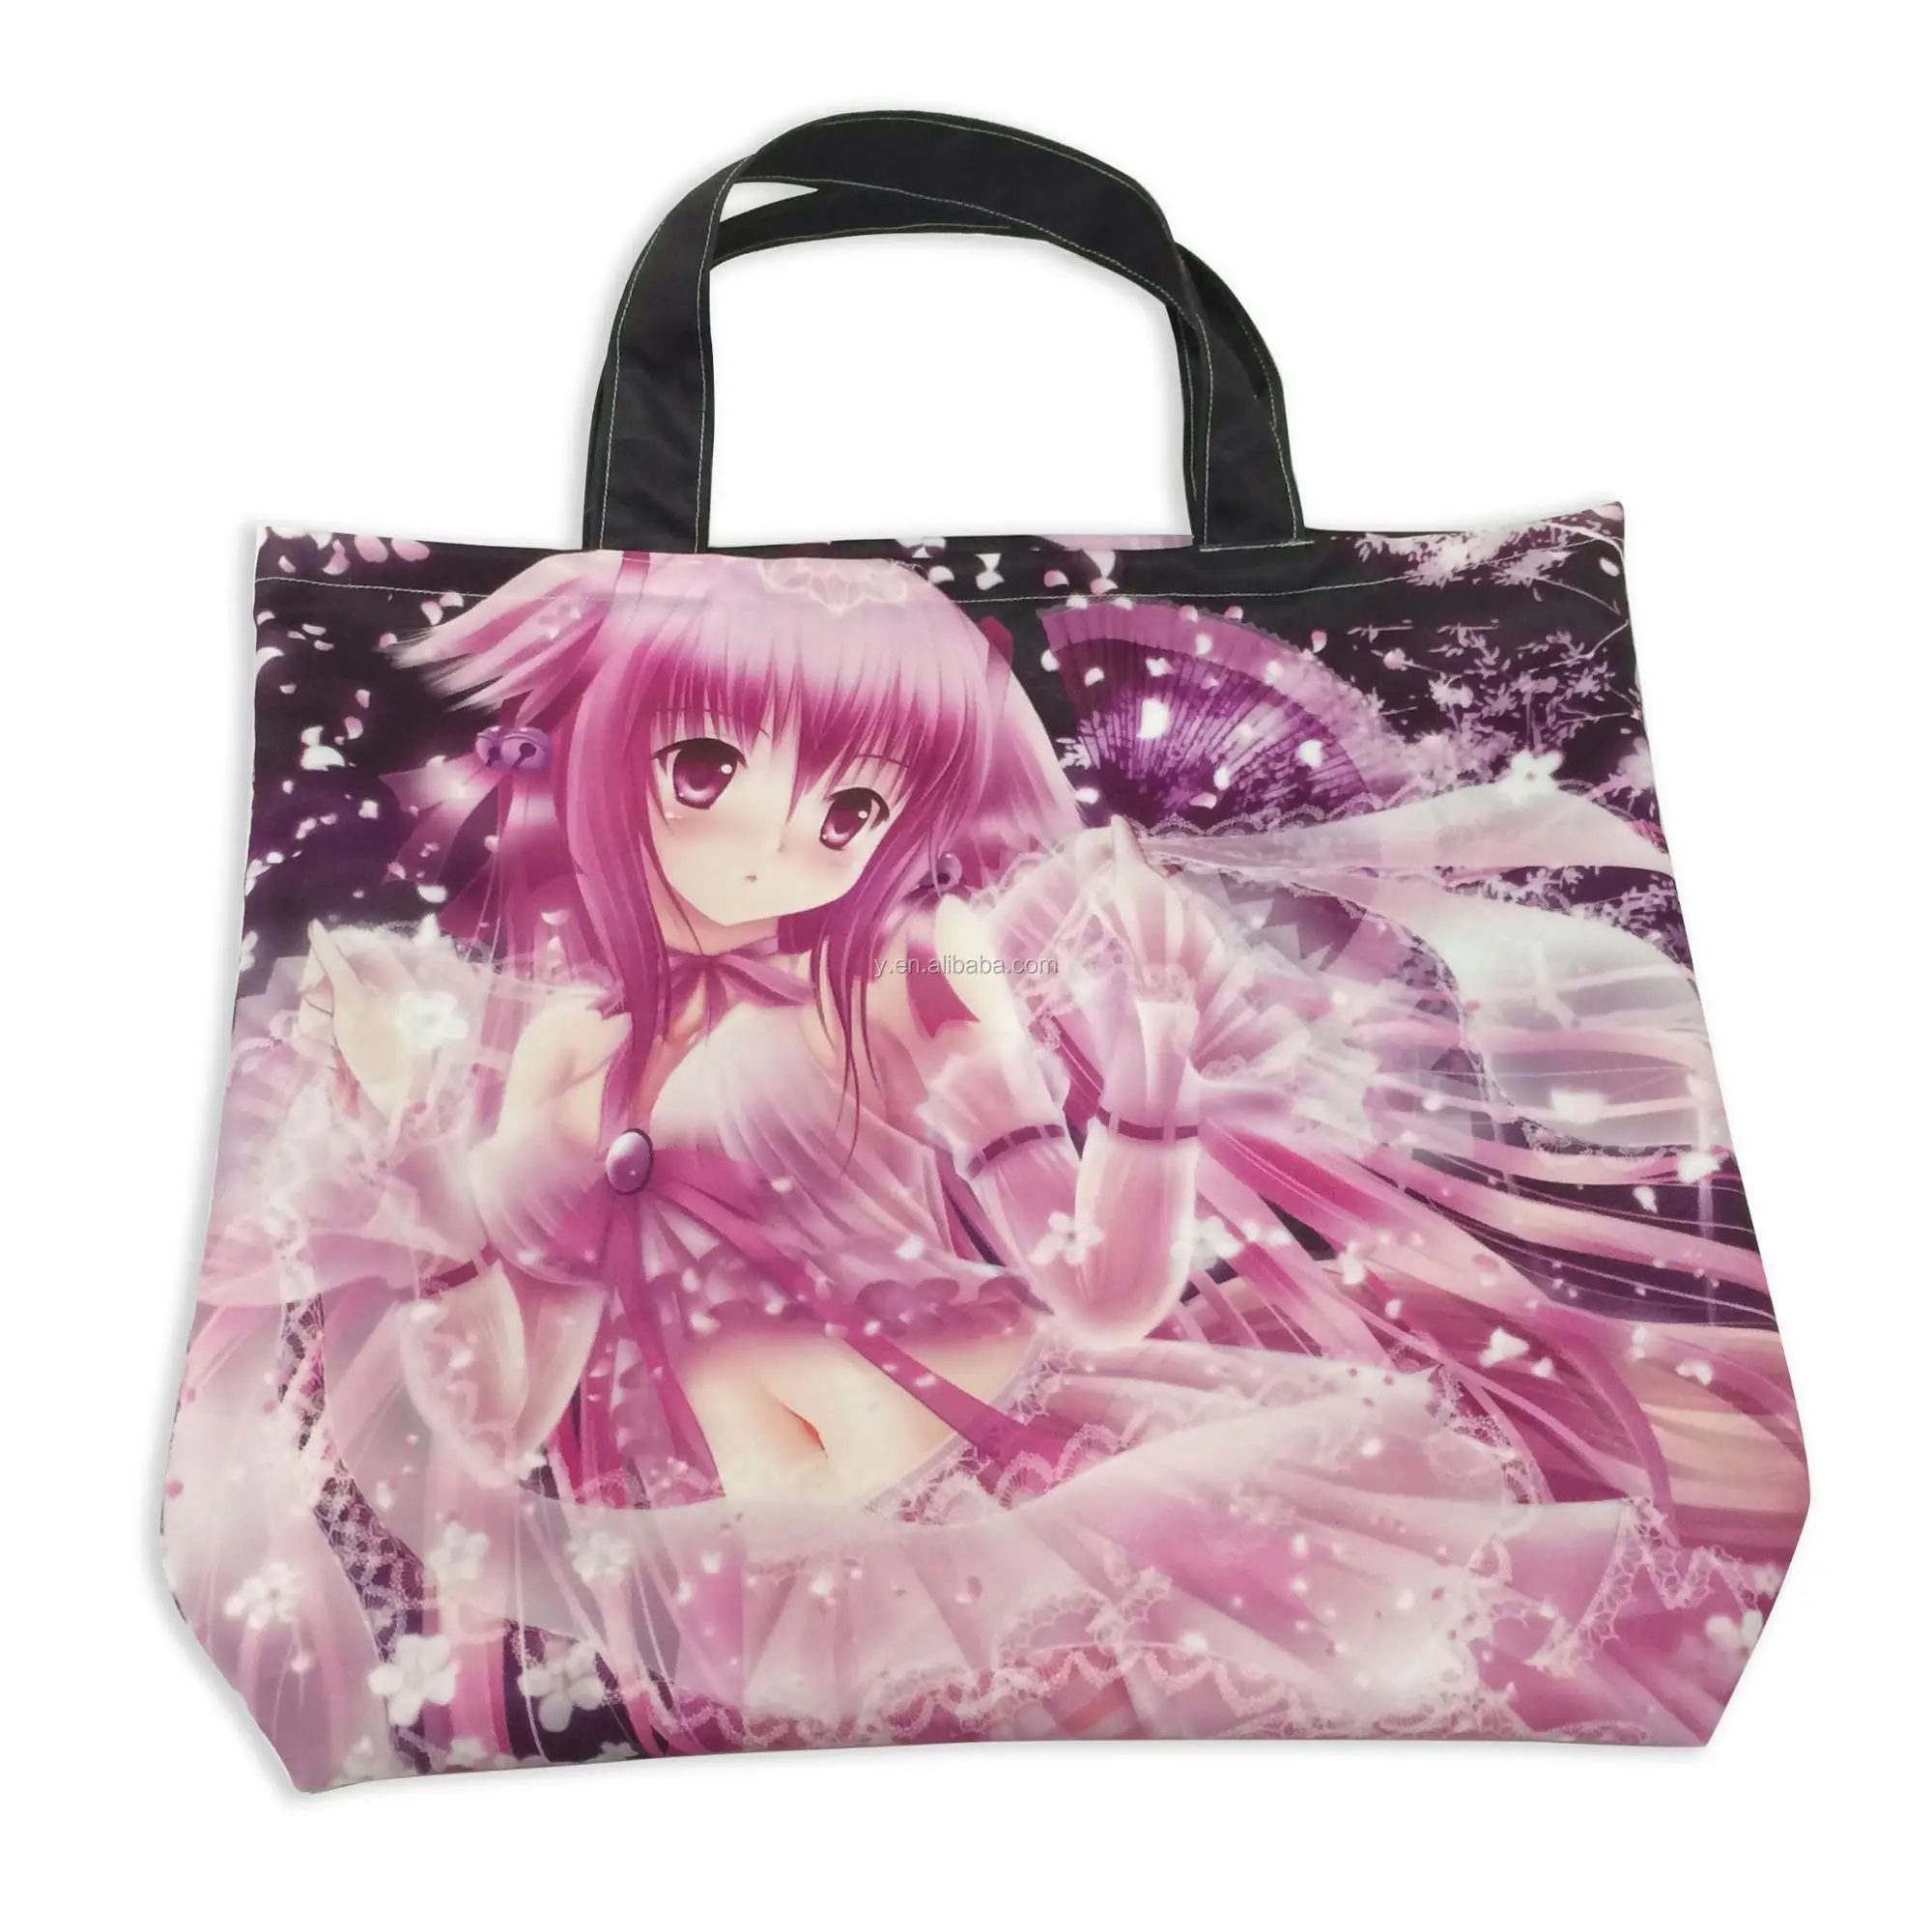 Neue Produkte, meistverkaufte, individuell bedruckte Anime-Einkaufstasche aus Vlies für Partyartikel